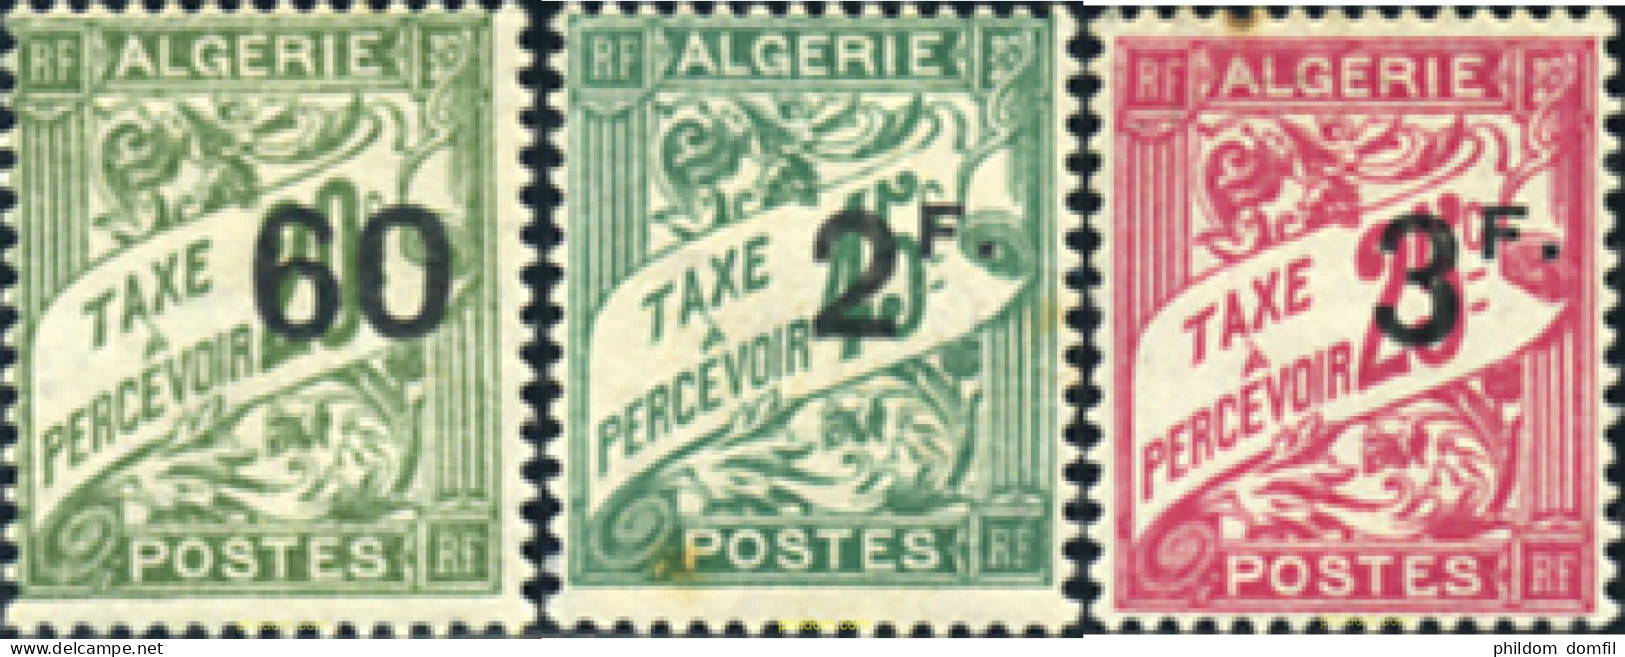 371047 HINGED ARGELIA 1926 SERIE BASICA - Algeria (1962-...)